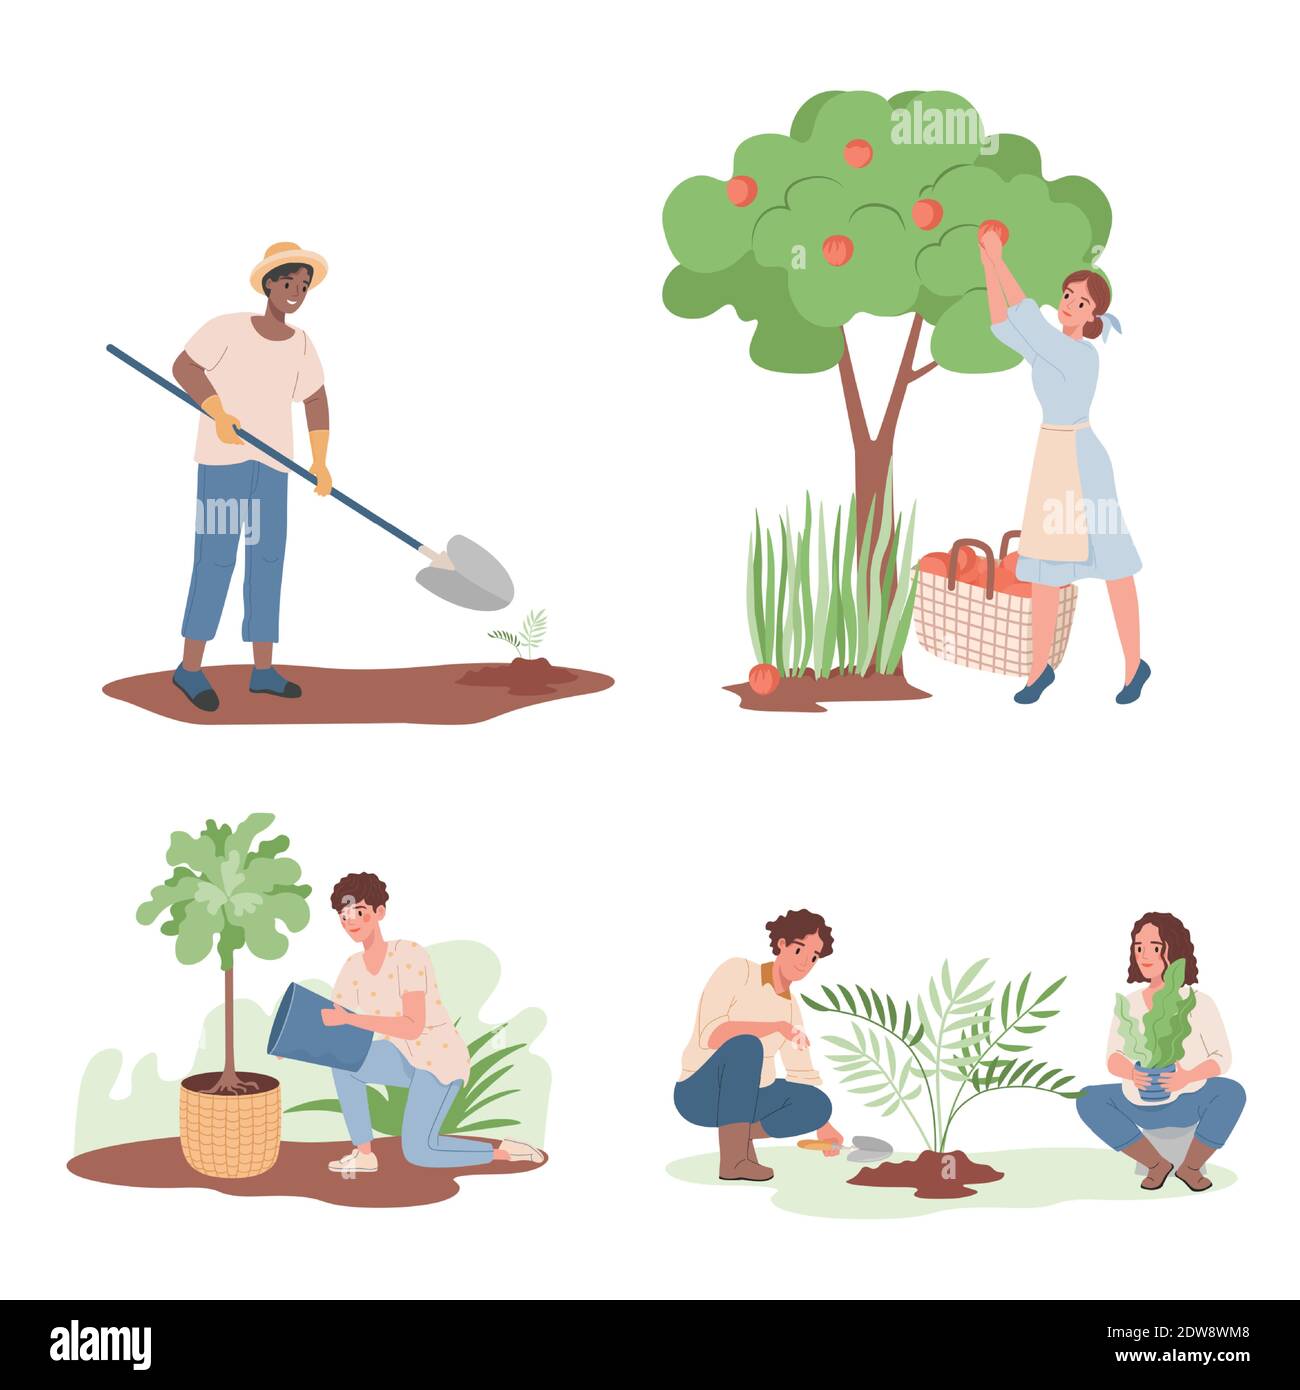 Gartenarbeit, Landwirtschaft Gärtner Hobby Vektor flache Illustration. Gruppe von glücklich lächelnden Menschen arbeiten im Garten, Bewässerung und Pflanzen, Ernte Apfelernte, Pflanzen graben. Stock Vektor